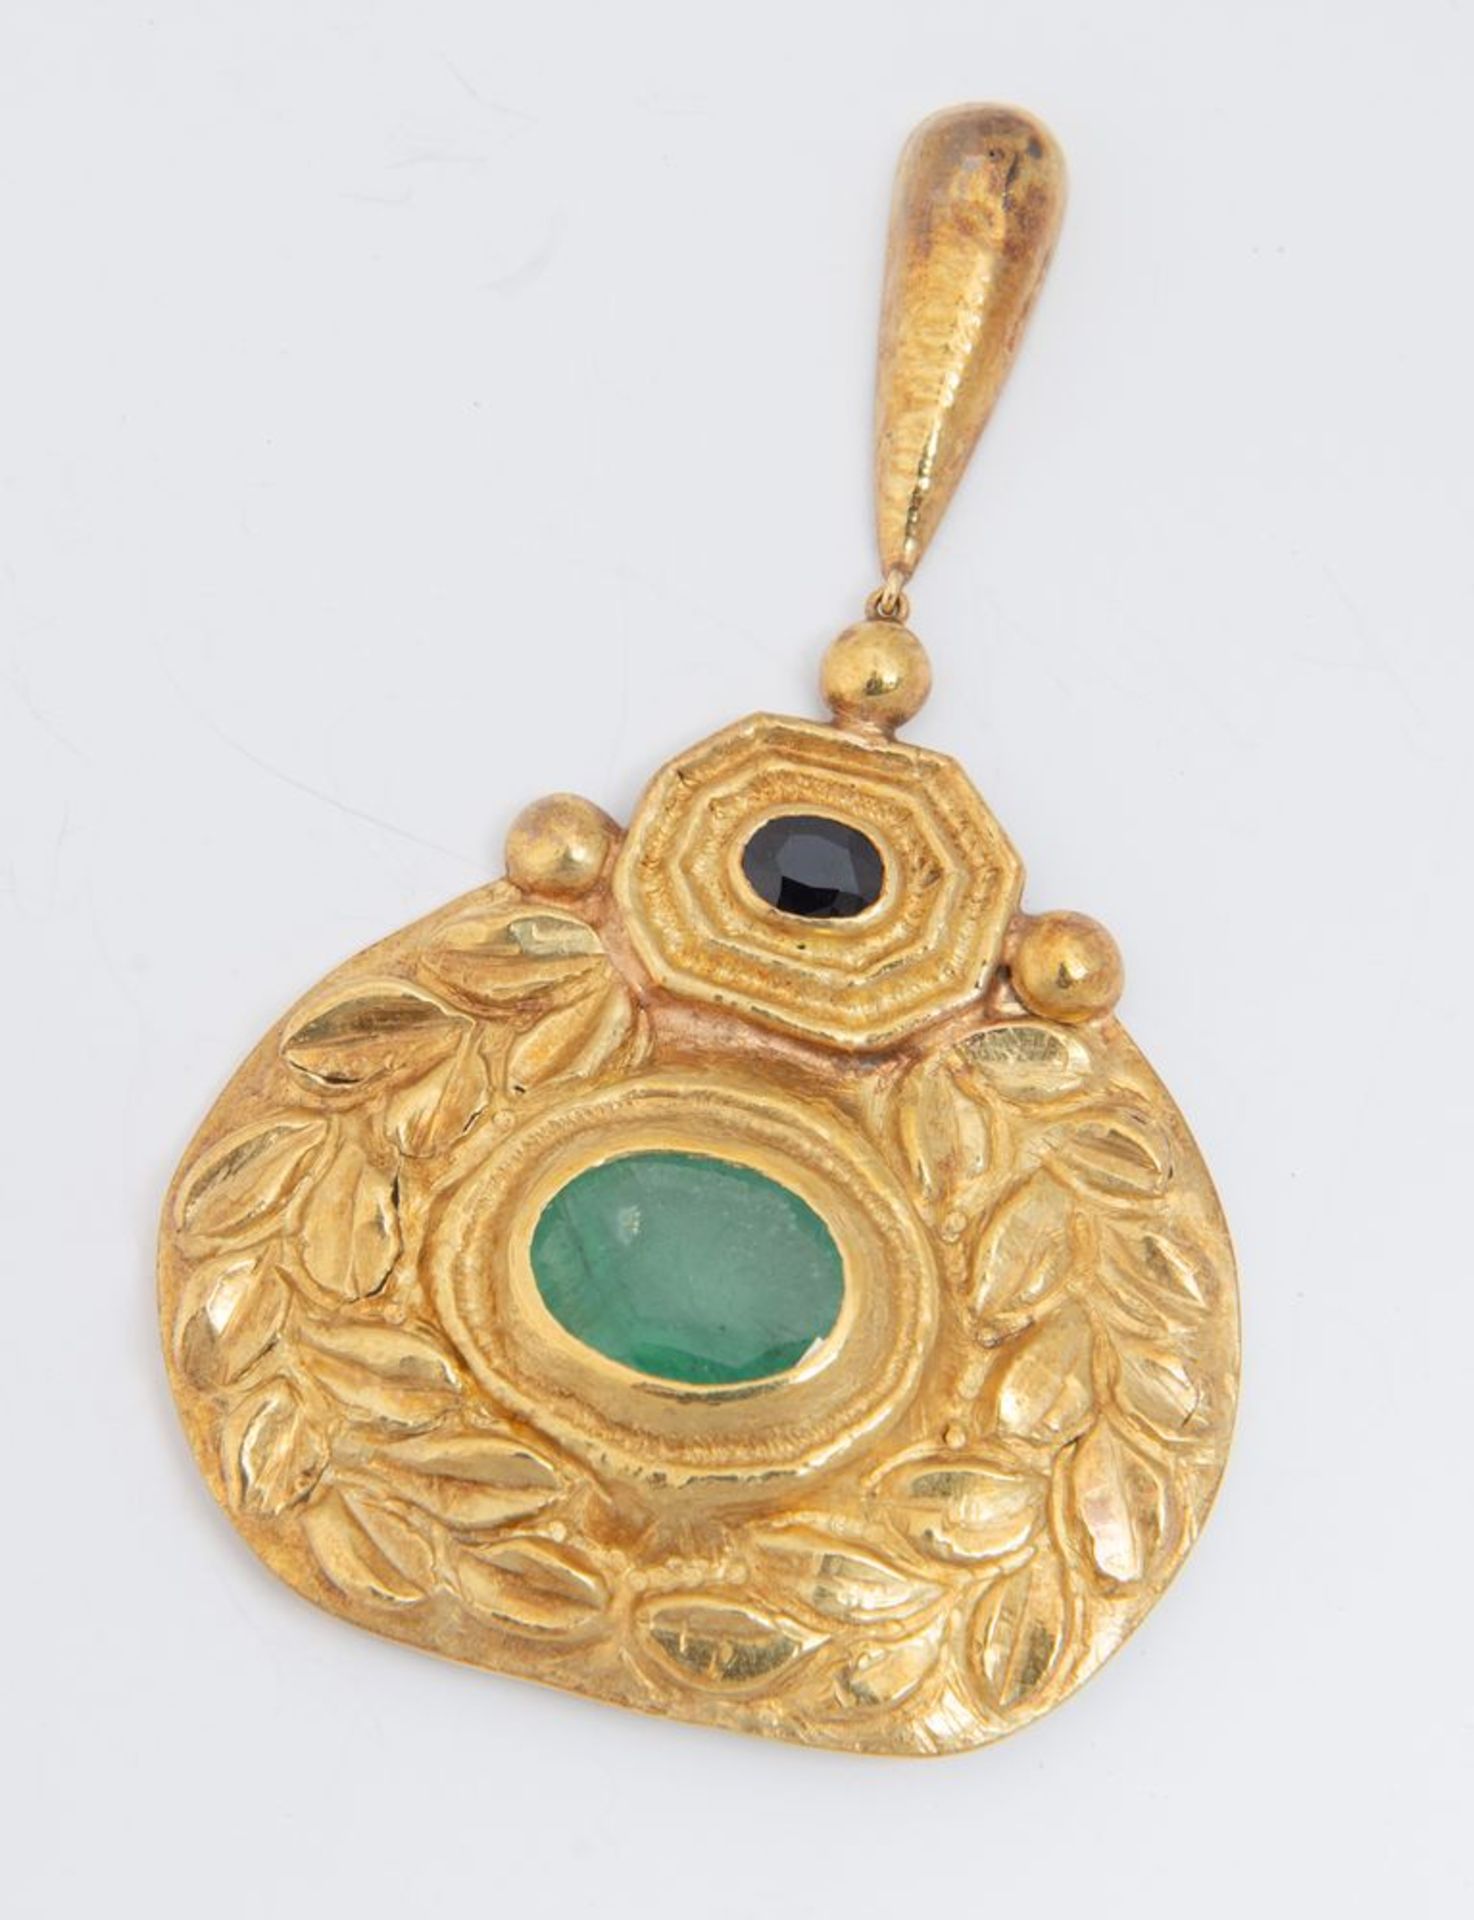 Pendente in oro, zaffiro e smeraldo. Realizzato come un medaglione sbalzato e inciso a motivi vegeta - Image 3 of 3